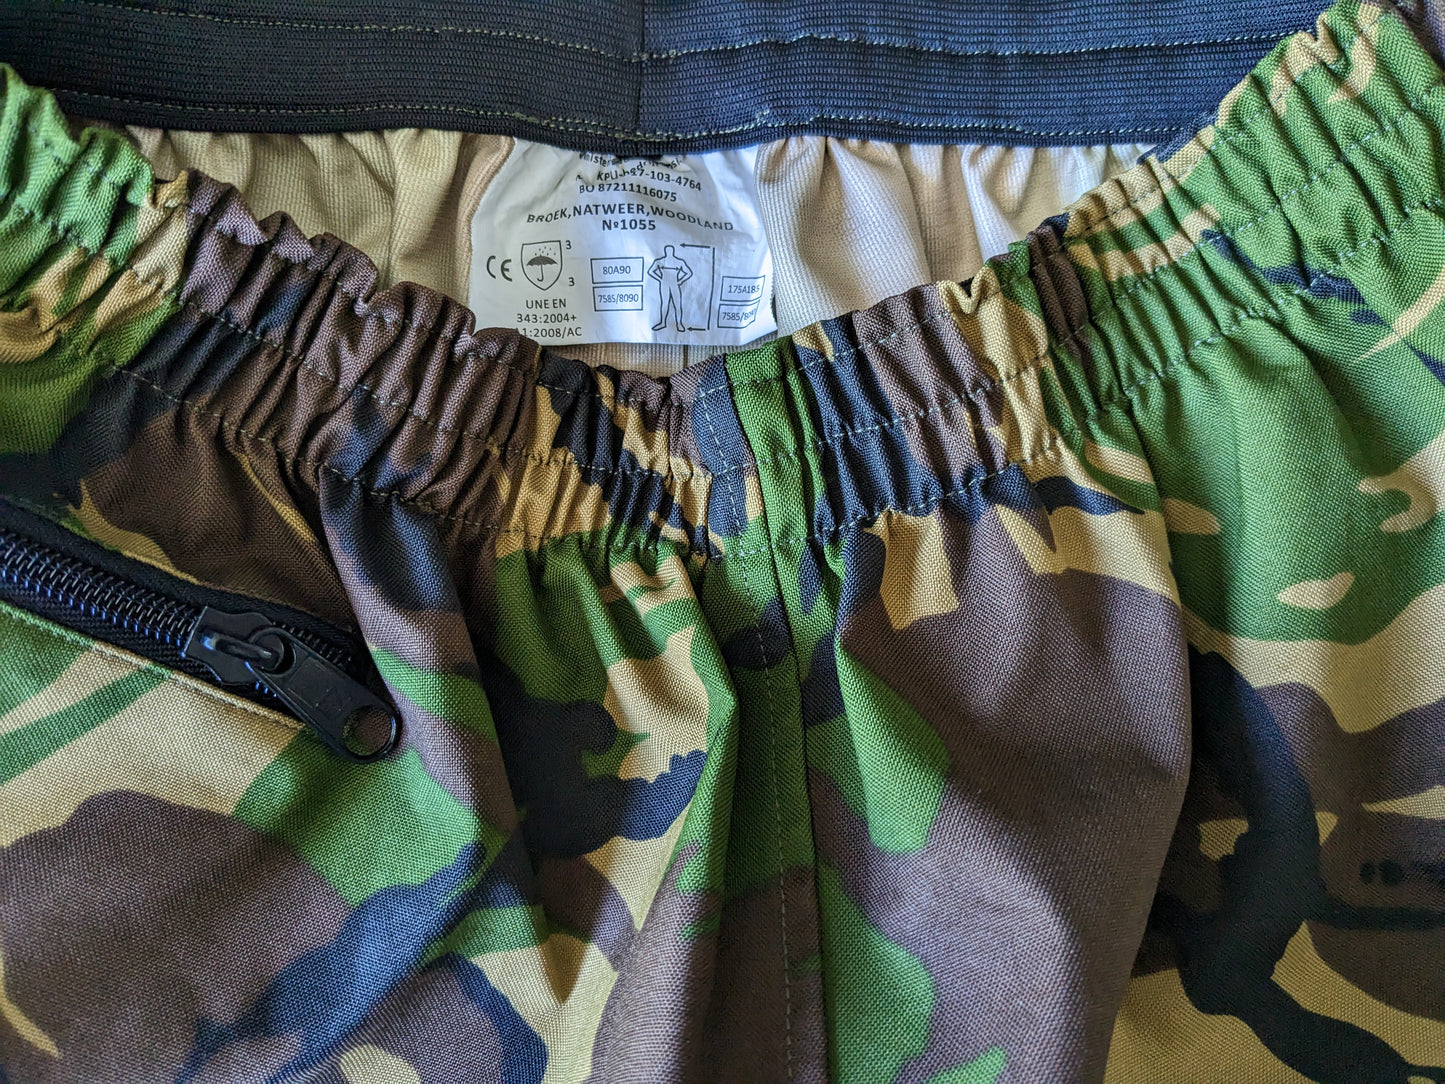 Pantaloni dell'esercito / esercito. Idrorepellente. Stampa mimetica nera verde marrone. Taglia M.